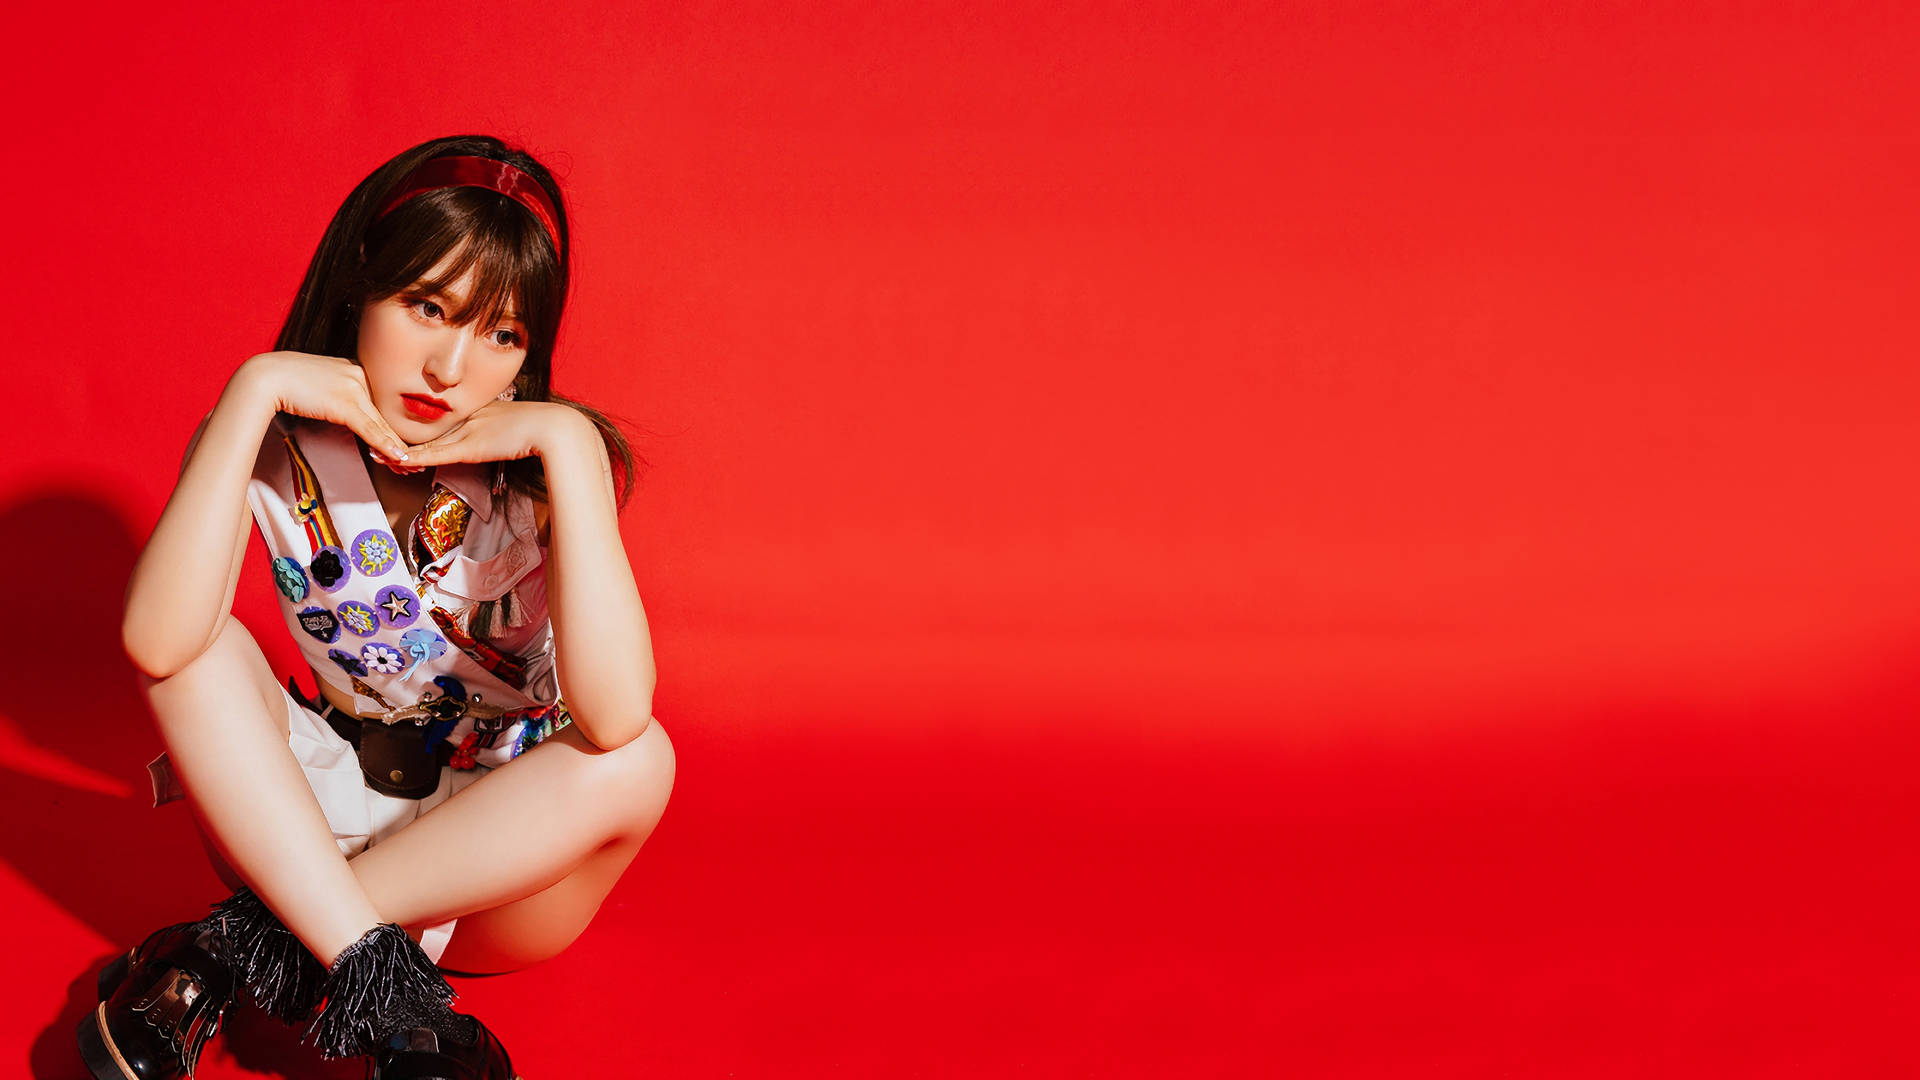 Red Velvet Girl Wendy Wallpaper